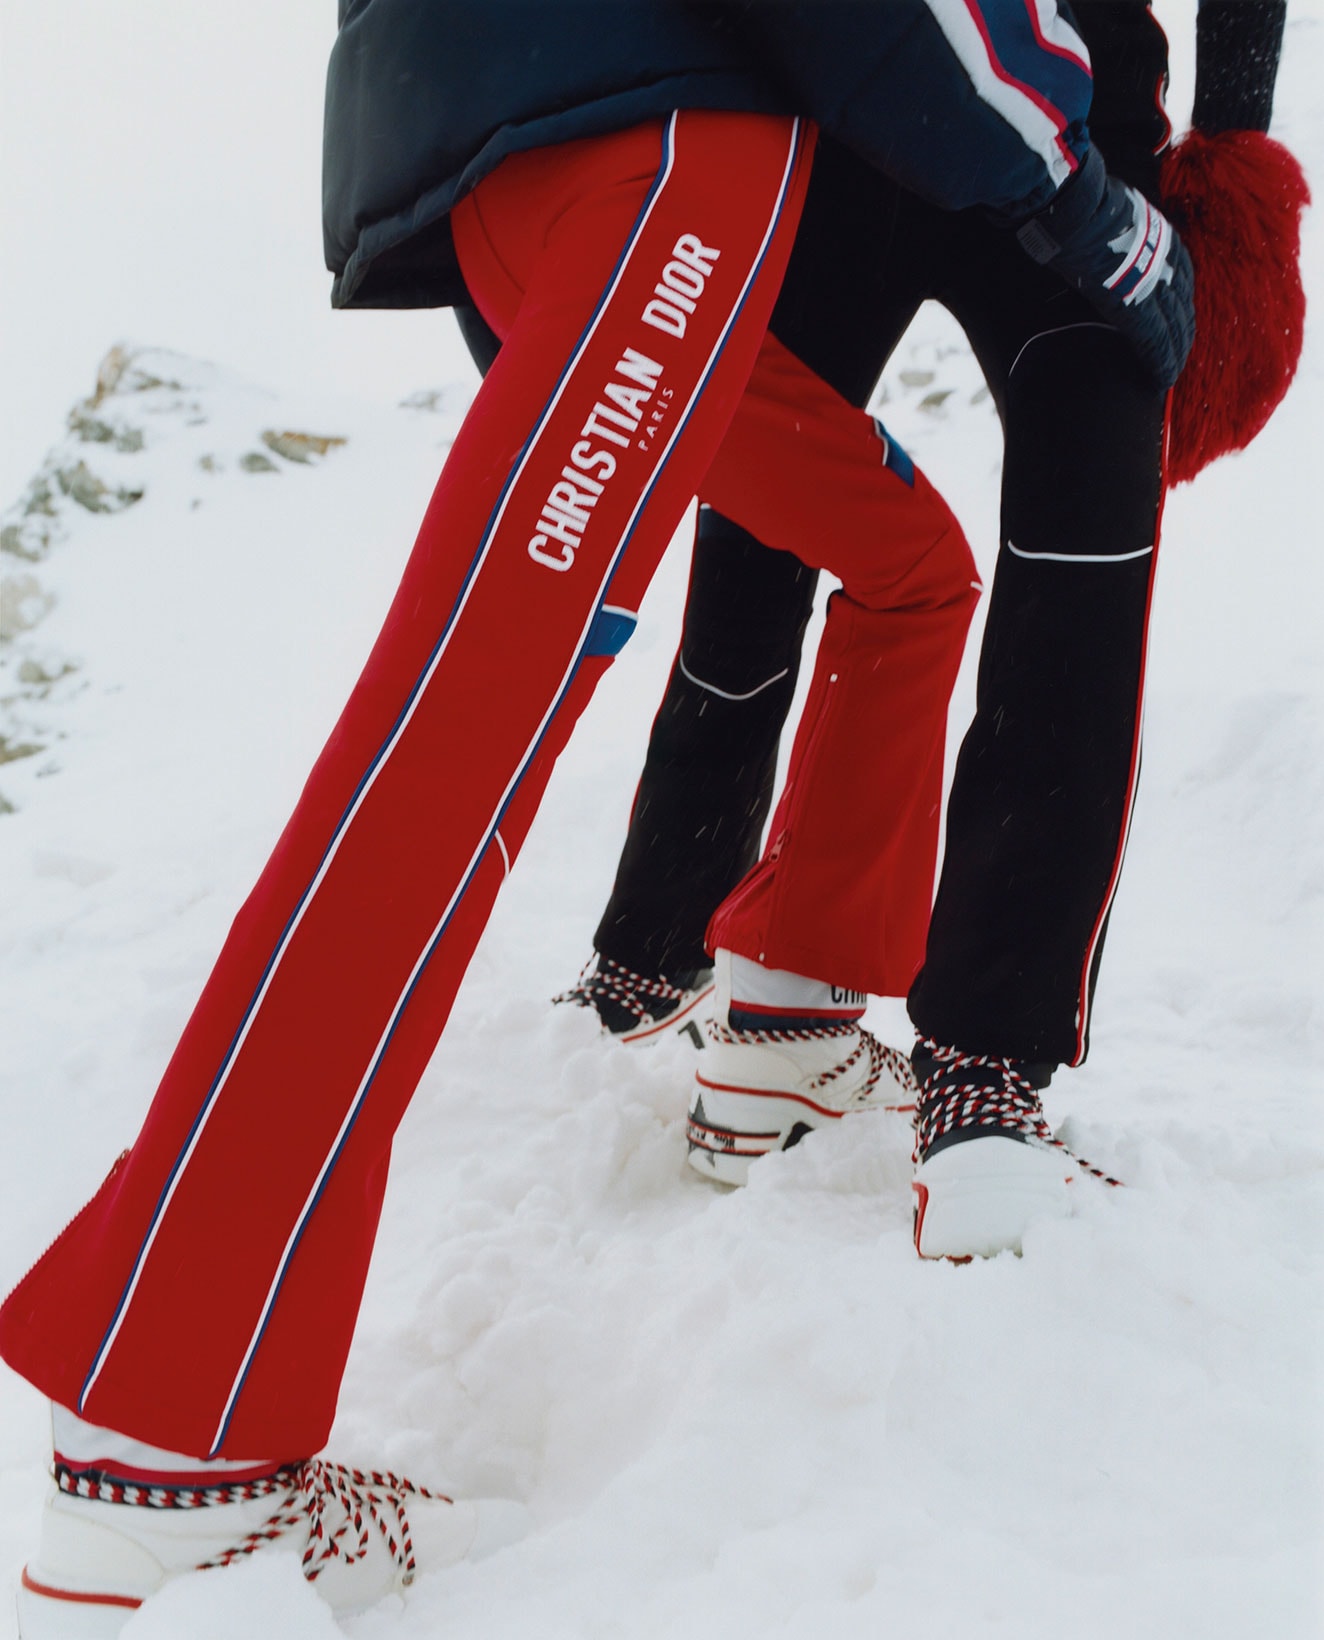 DiorAlps Ski Capsule Snow Boots Goggles Maria Grazia Chiui Release Where to buy